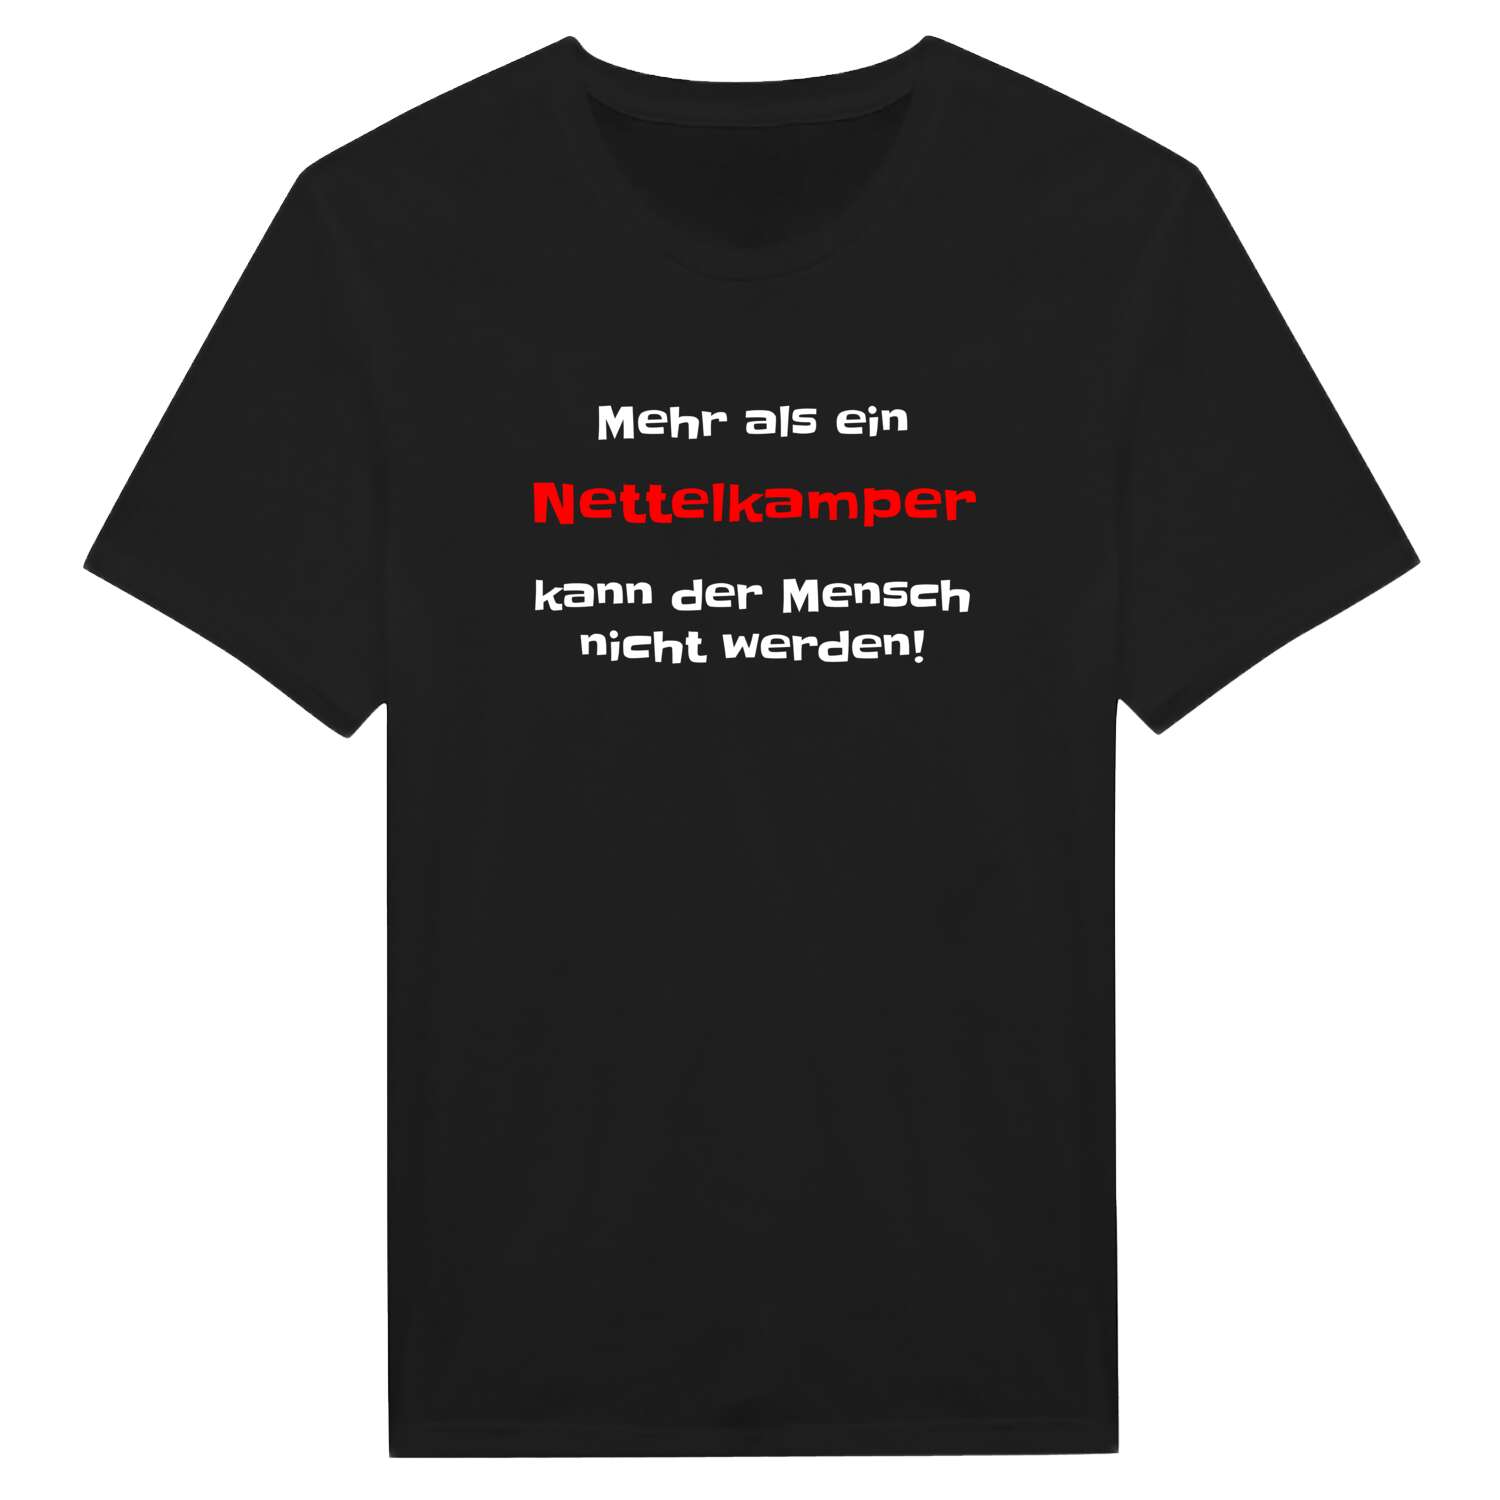 Nettelkamp T-Shirt »Mehr als ein«